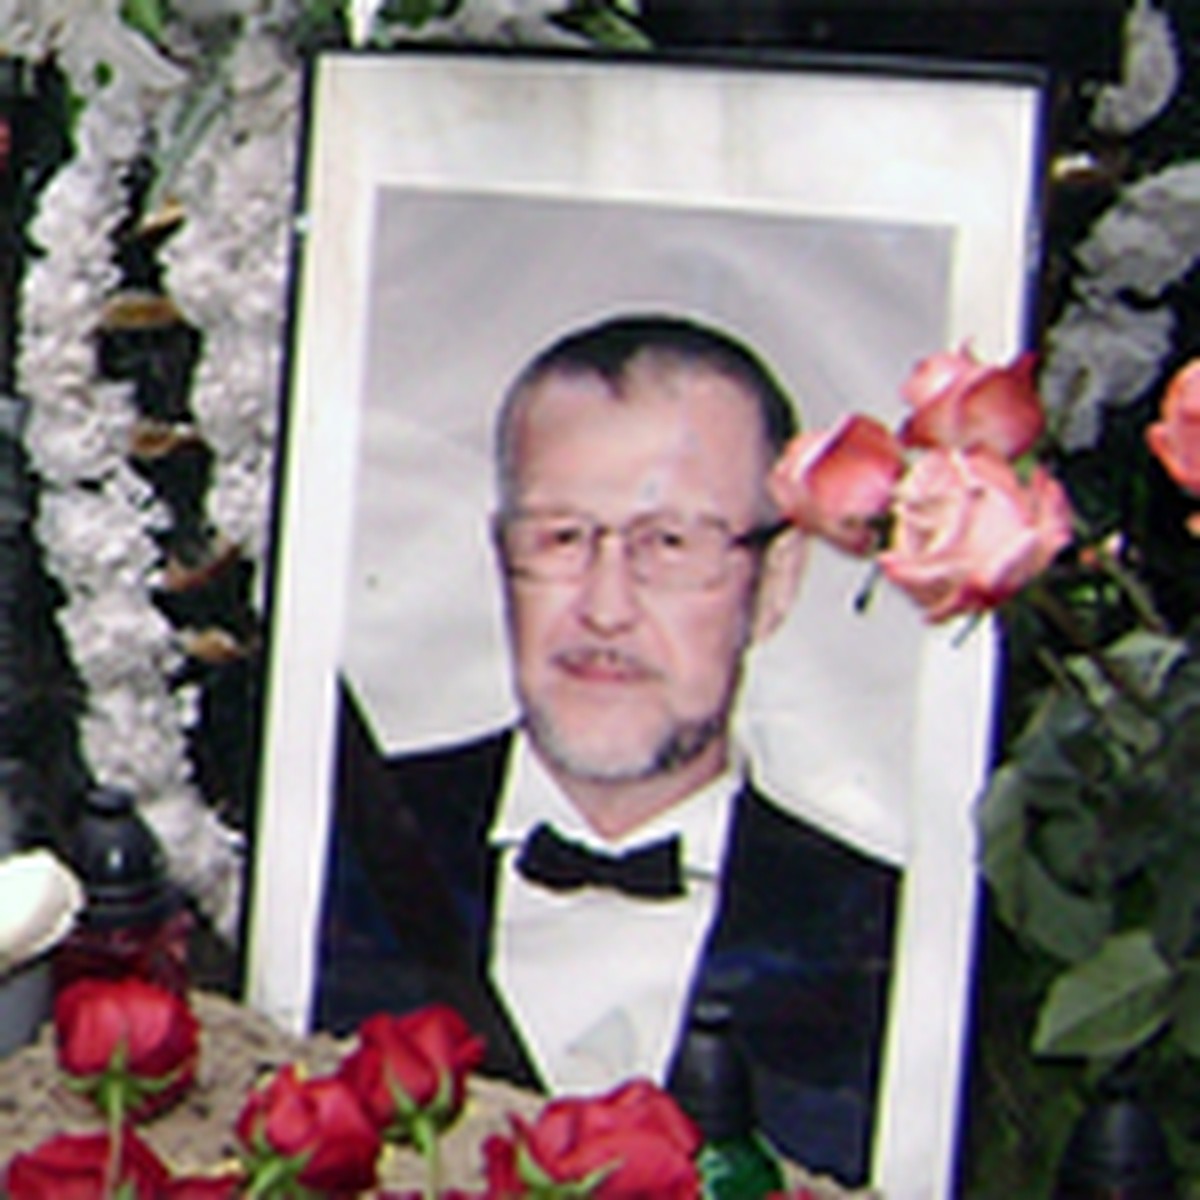 Япончик похоронен. Могила Иванькова Япончика на Ваганьковском кладбище. Япончик криминальный авторитет могила.